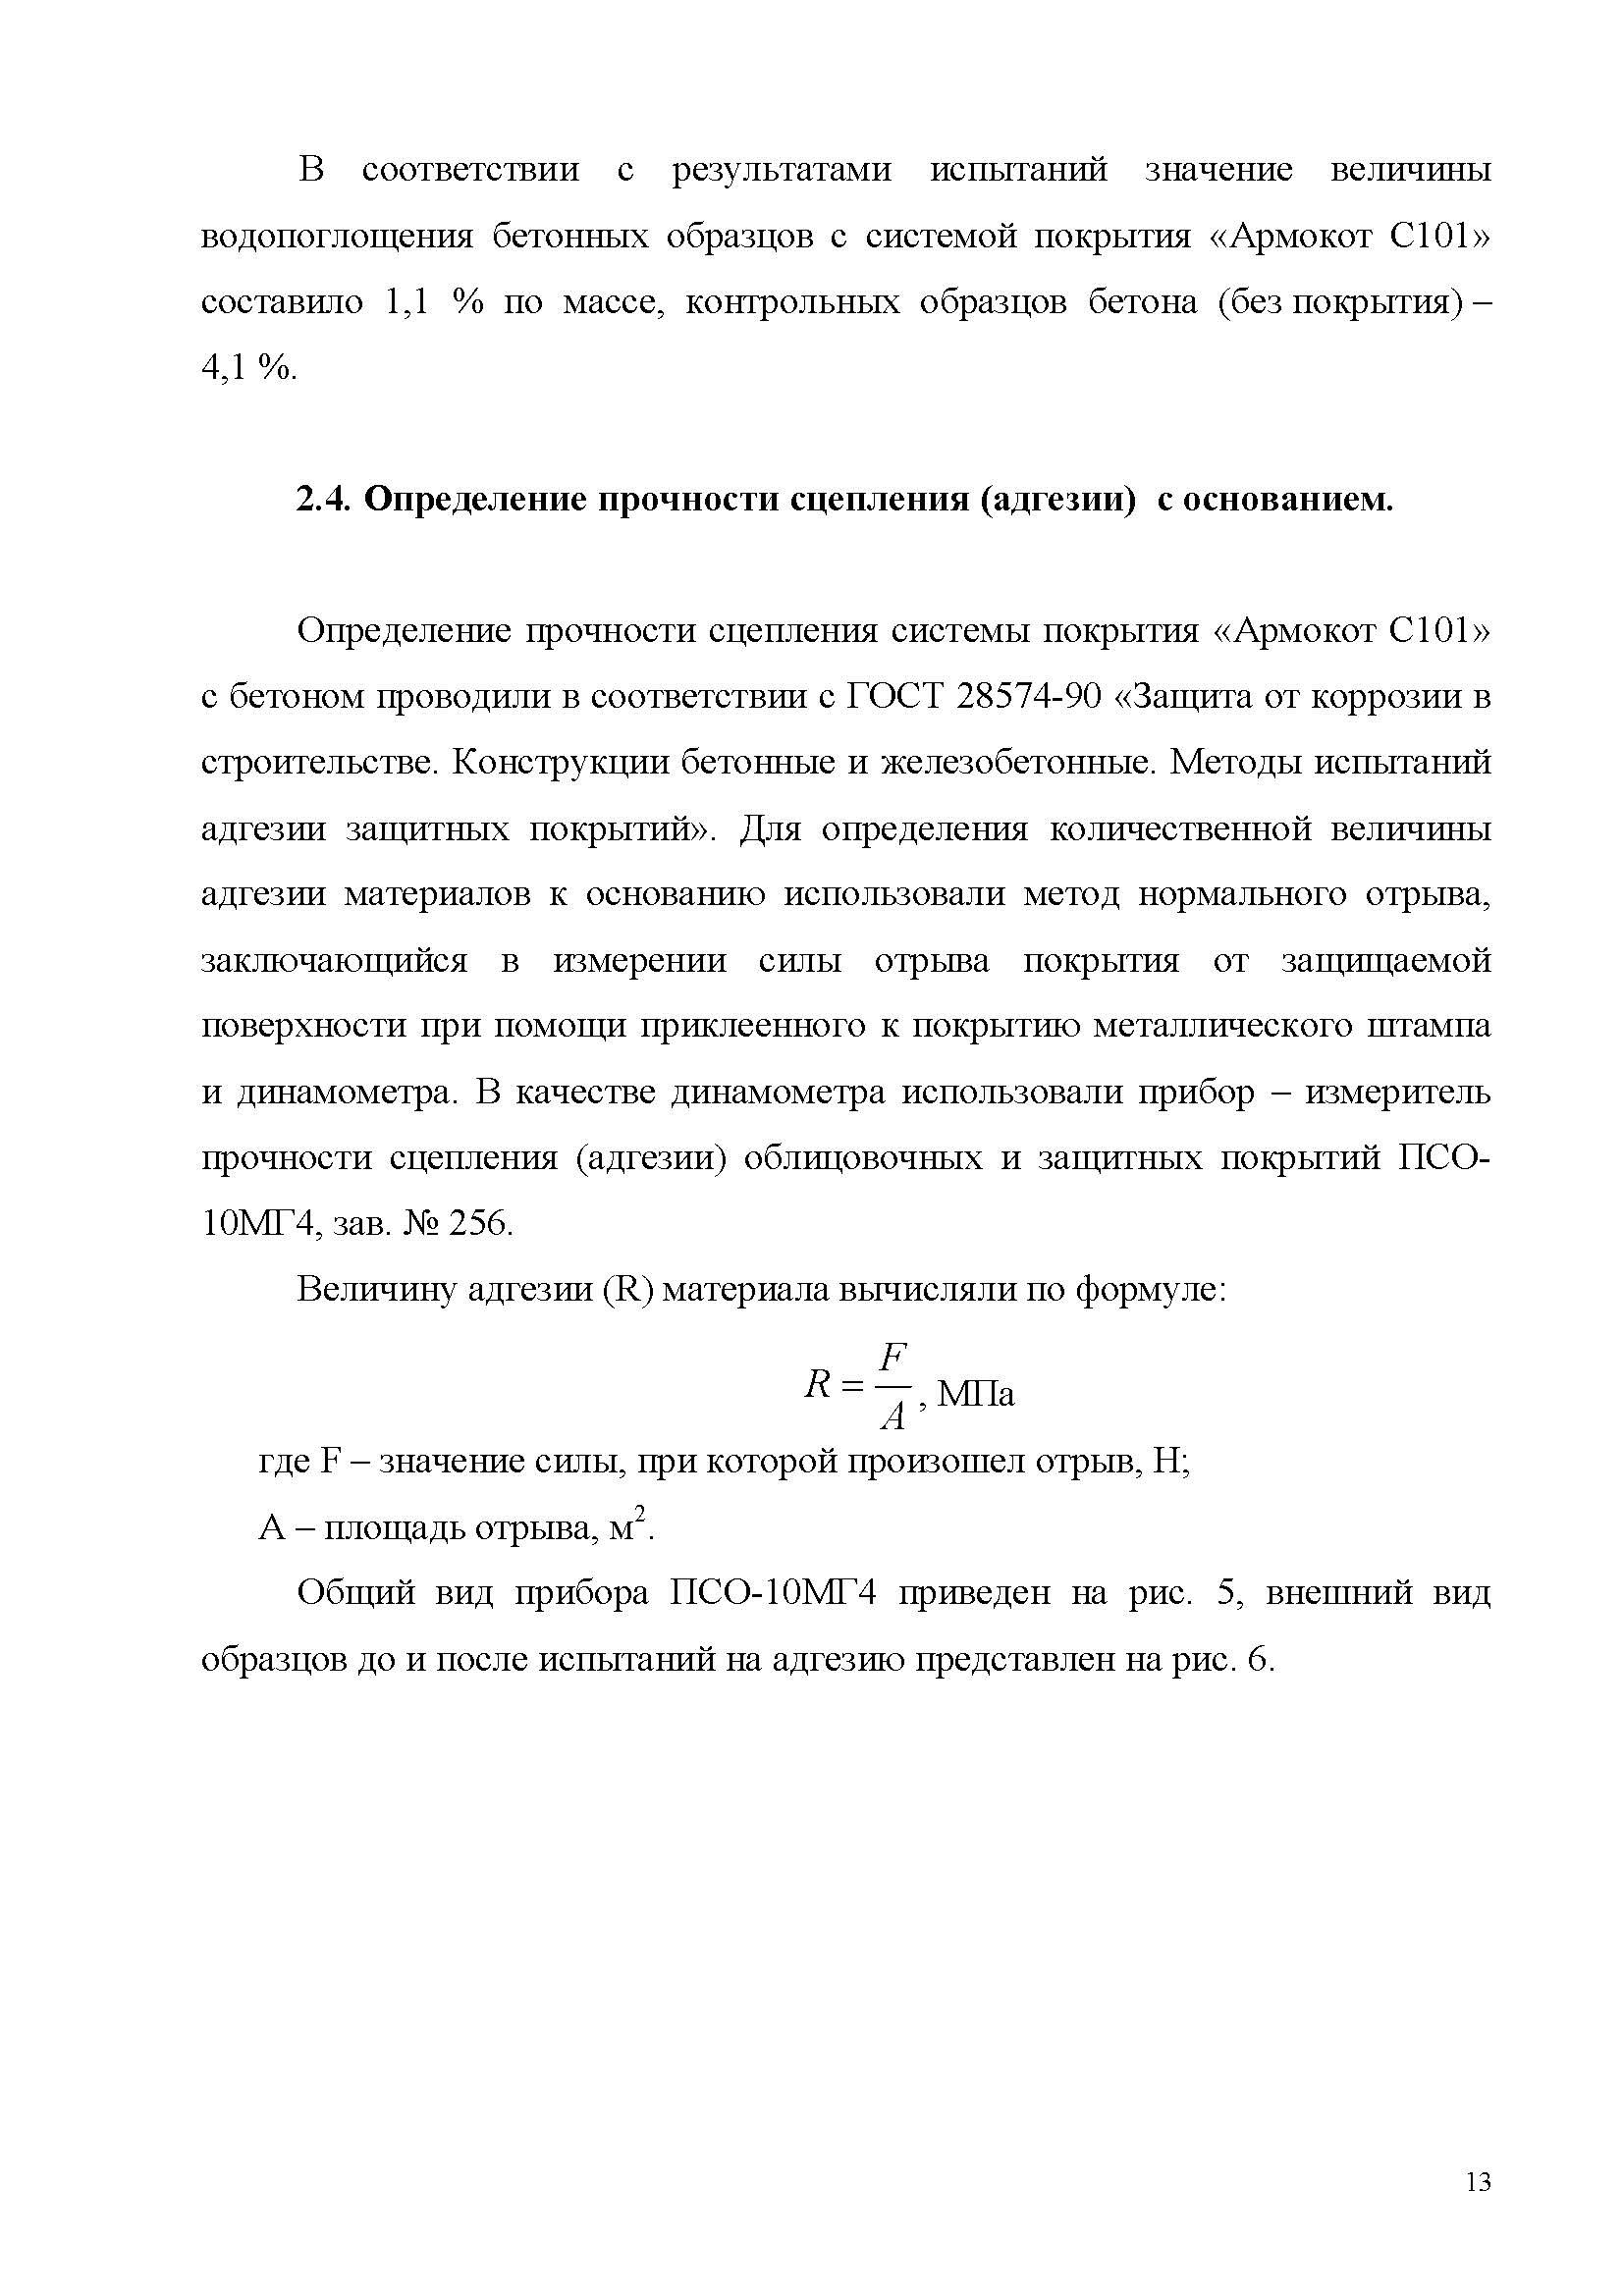 Заключение Морозов-КТБ Армокот С101_Страница_13